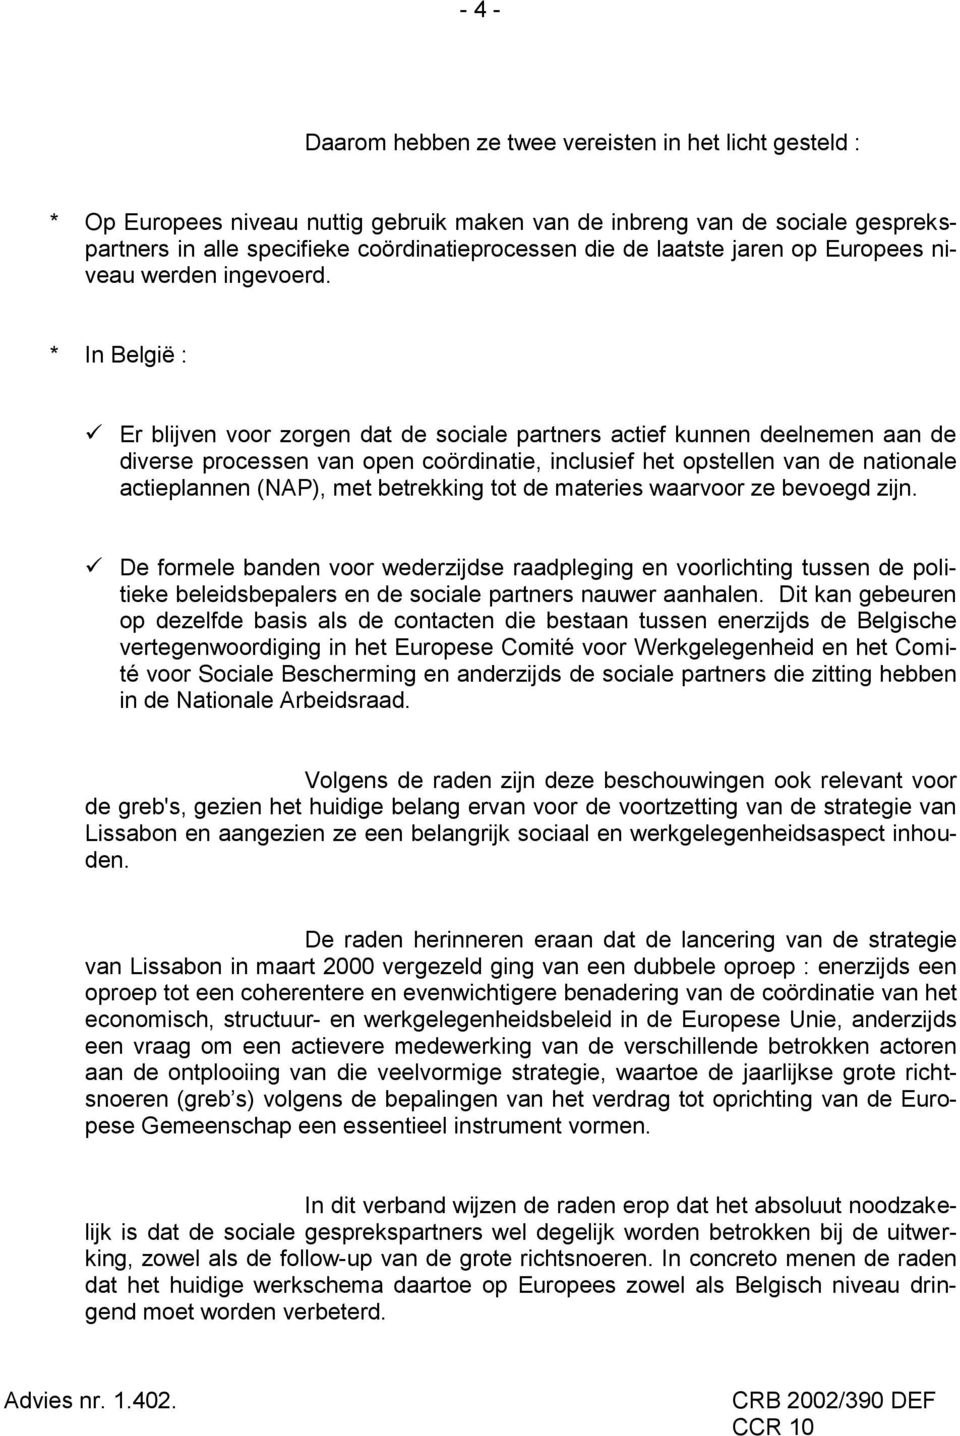 * In België : Er blijven voor zorgen dat de sociale partners actief kunnen deelnemen aan de diverse processen van open coördinatie, inclusief het opstellen van de nationale actieplannen (NAP), met